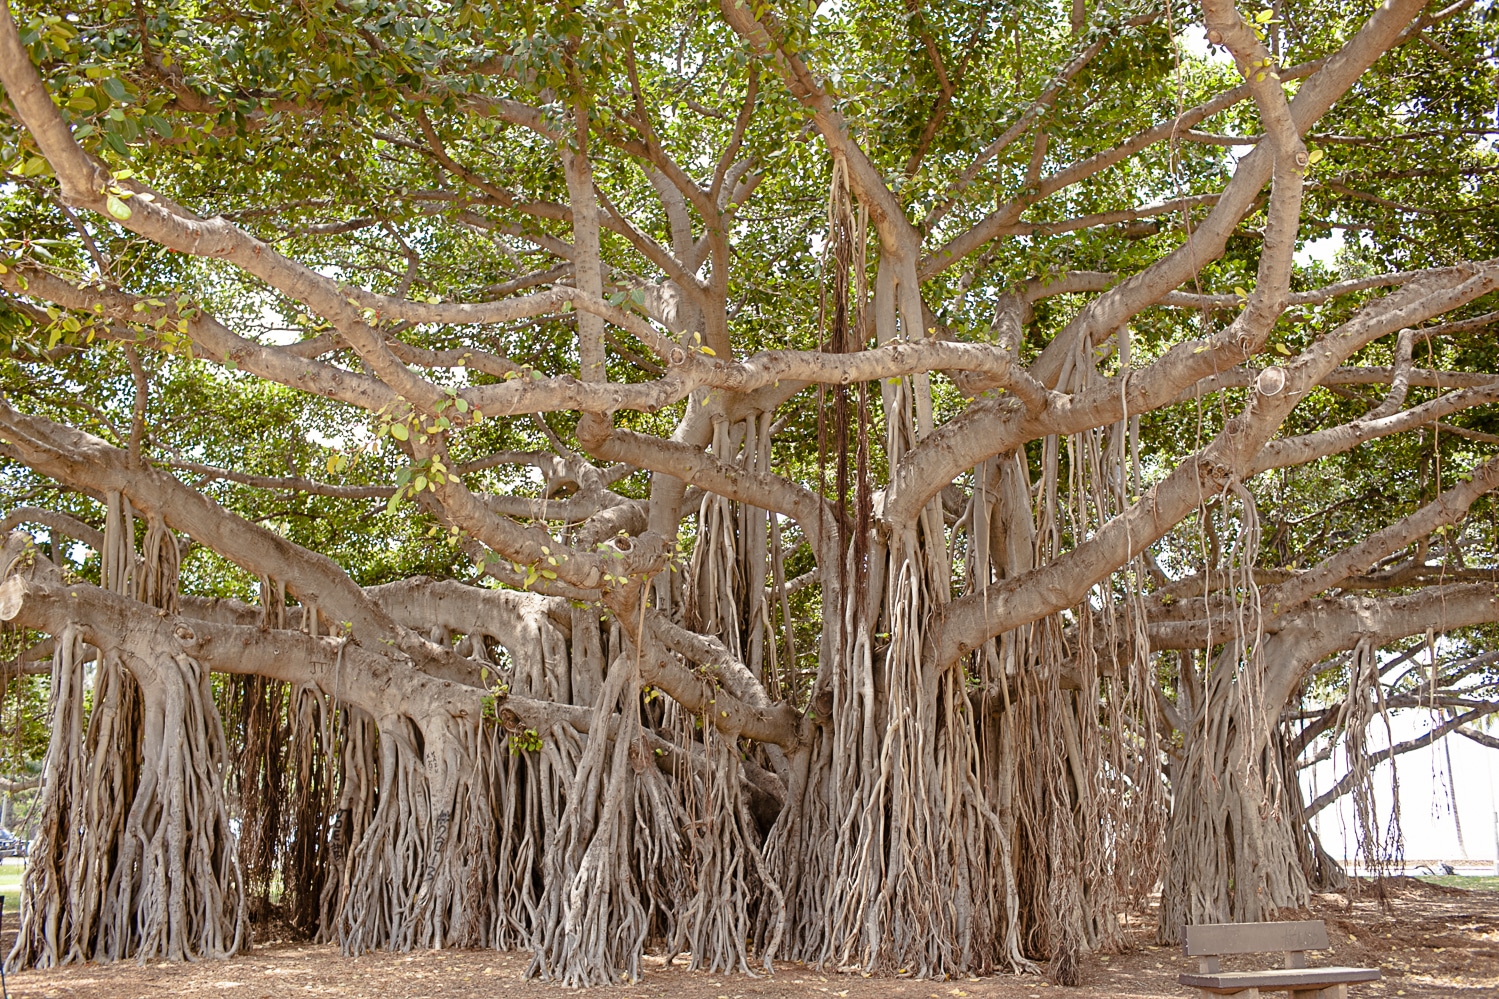 Honeymoon in Hawaii. Banyan tree